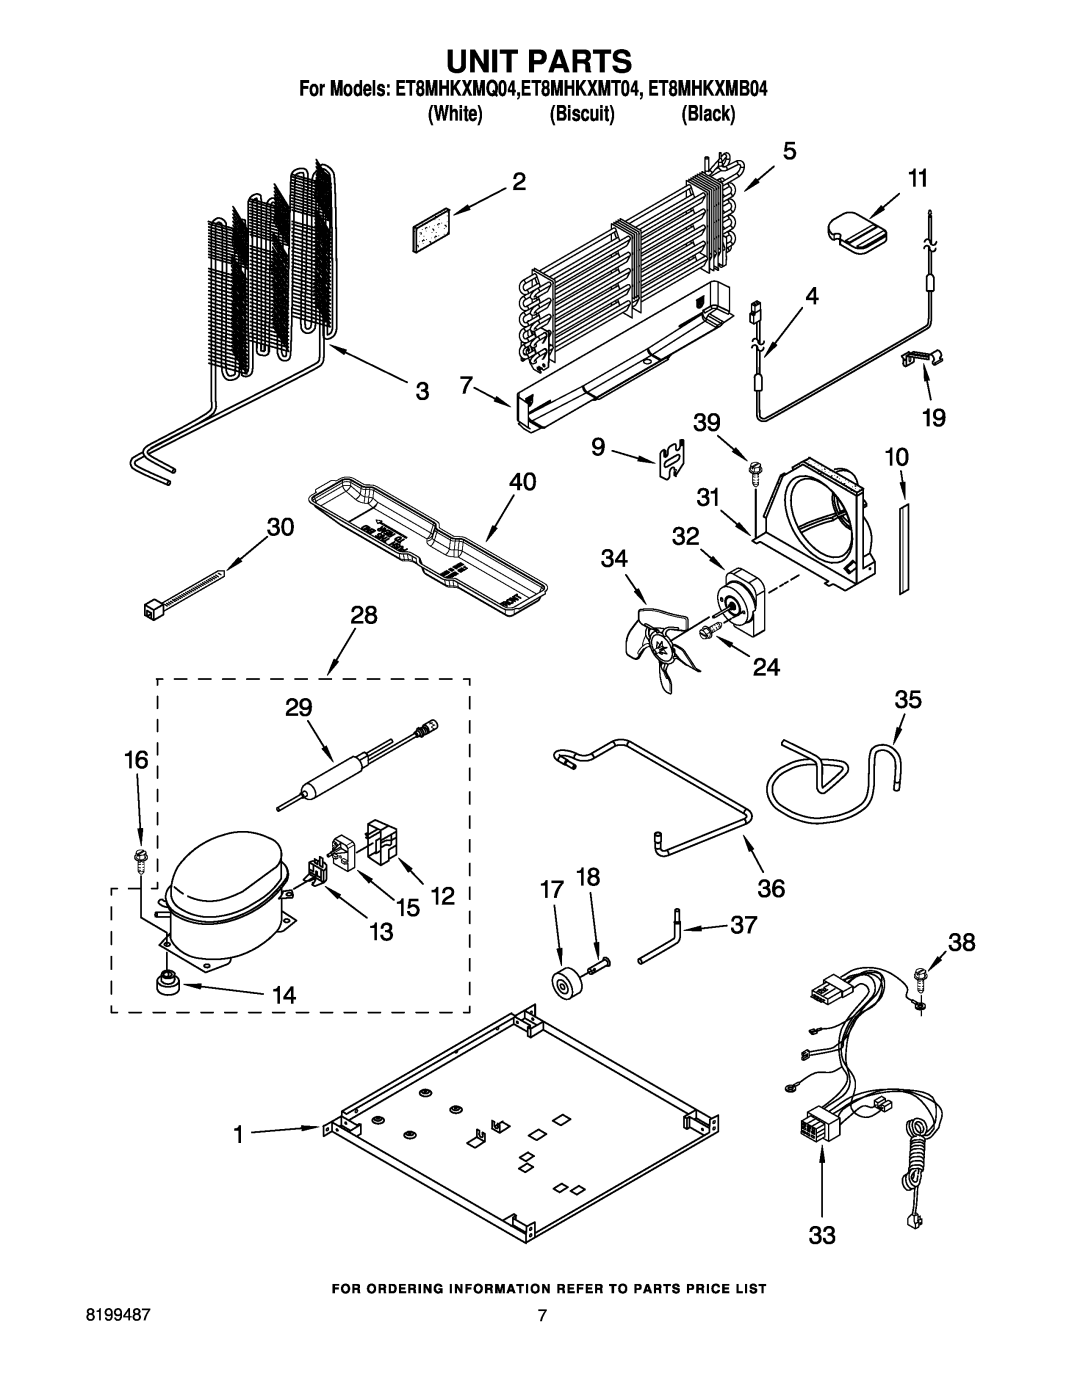 Whirlpool manual Unit Parts, For Models ET8MHKXMQ04,ET8MHKXMT04, ET8MHKXMB04, White Biscuit Black 